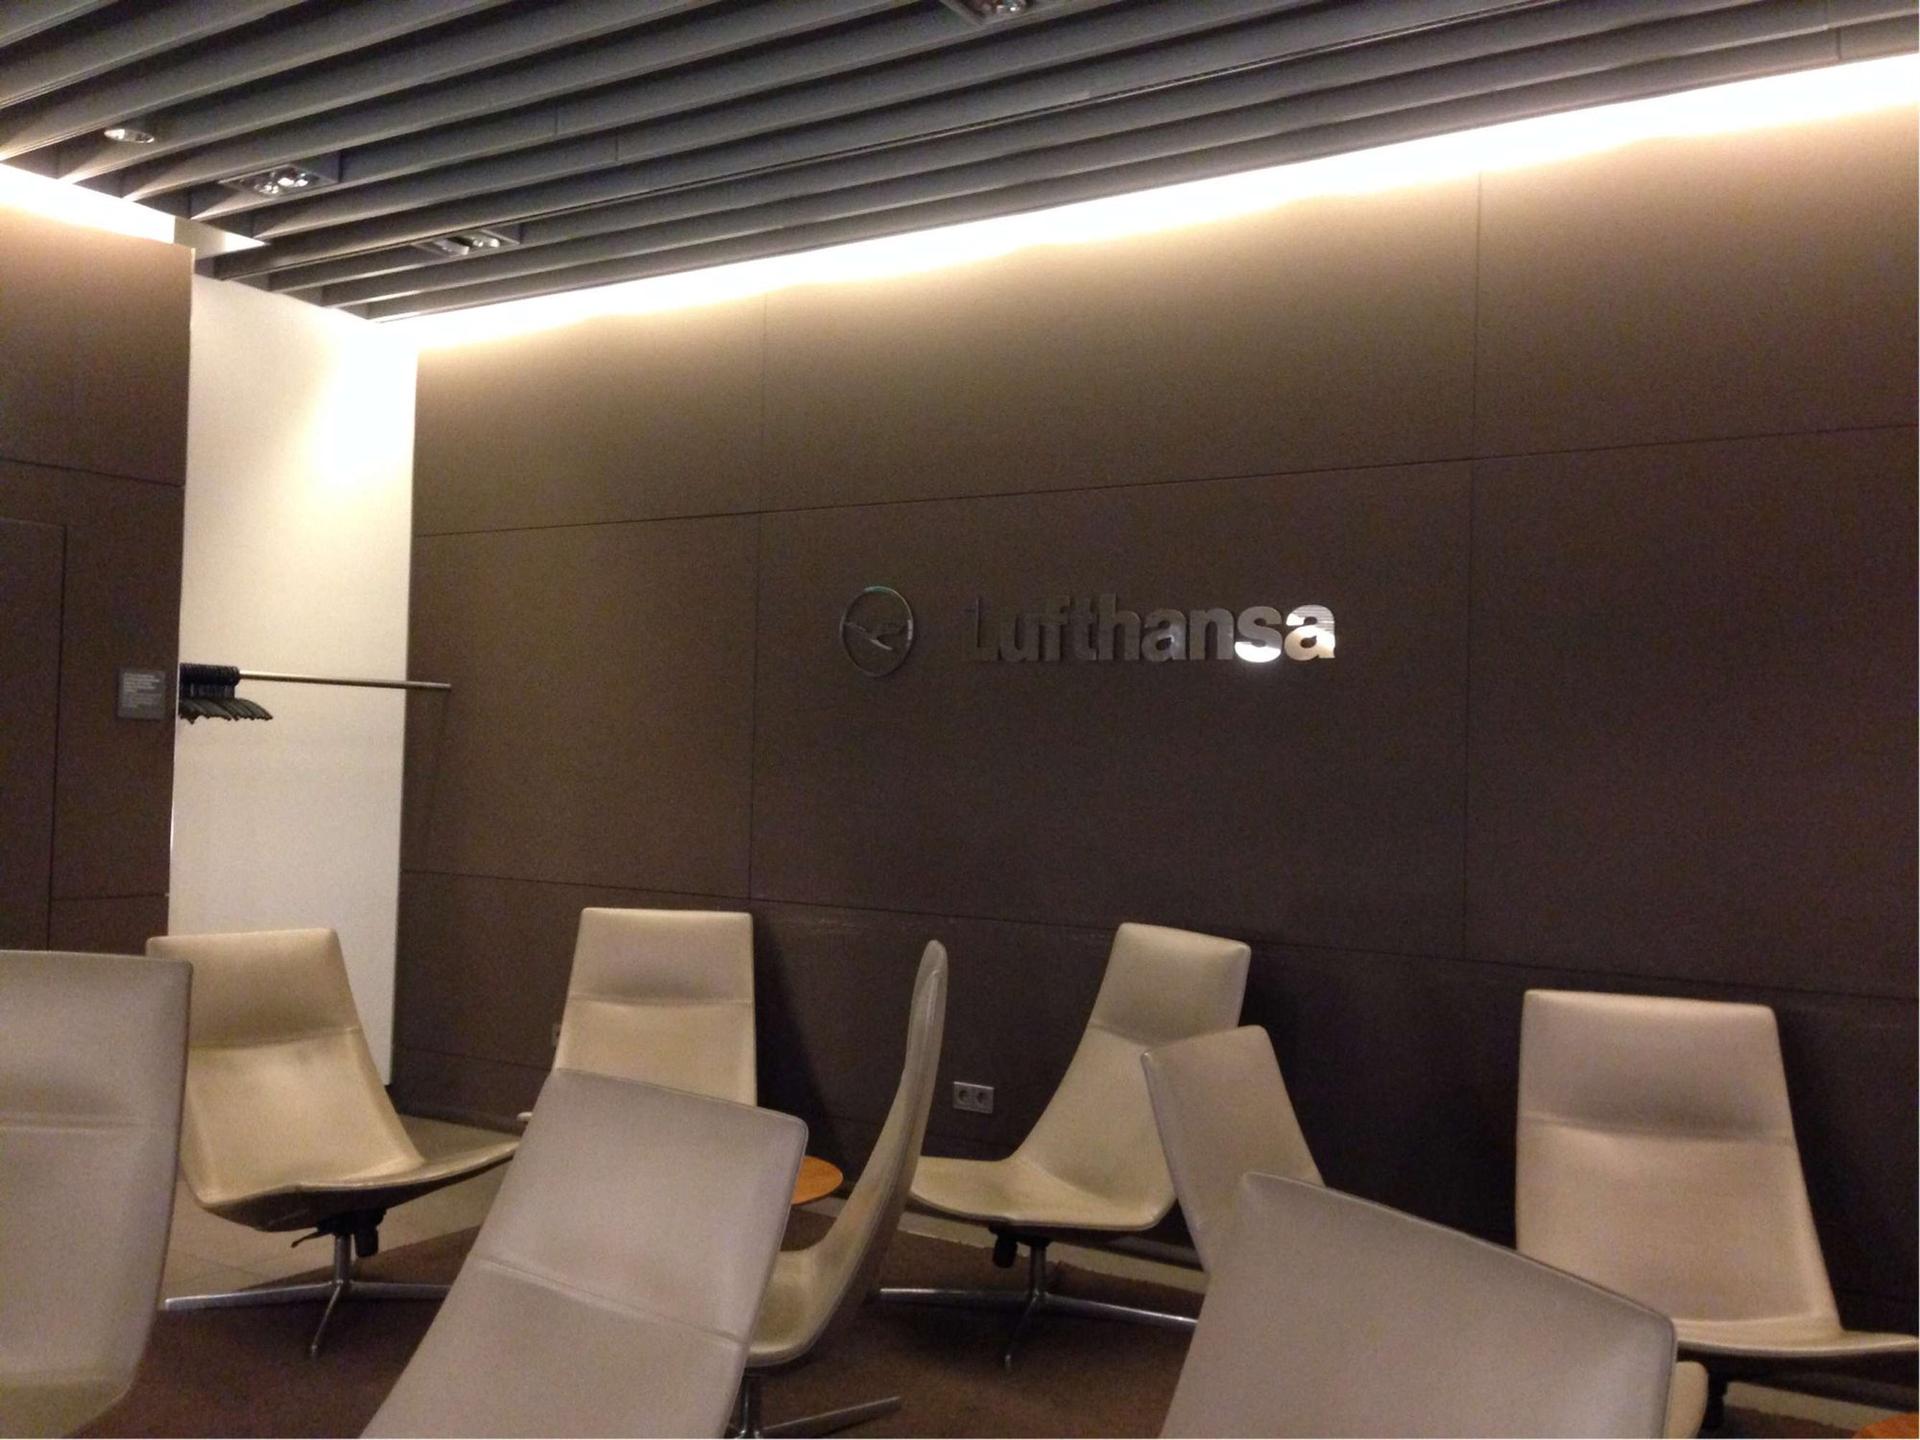 Lufthansa Senator Lounge (Gate G24, Schengen) image 1 of 5